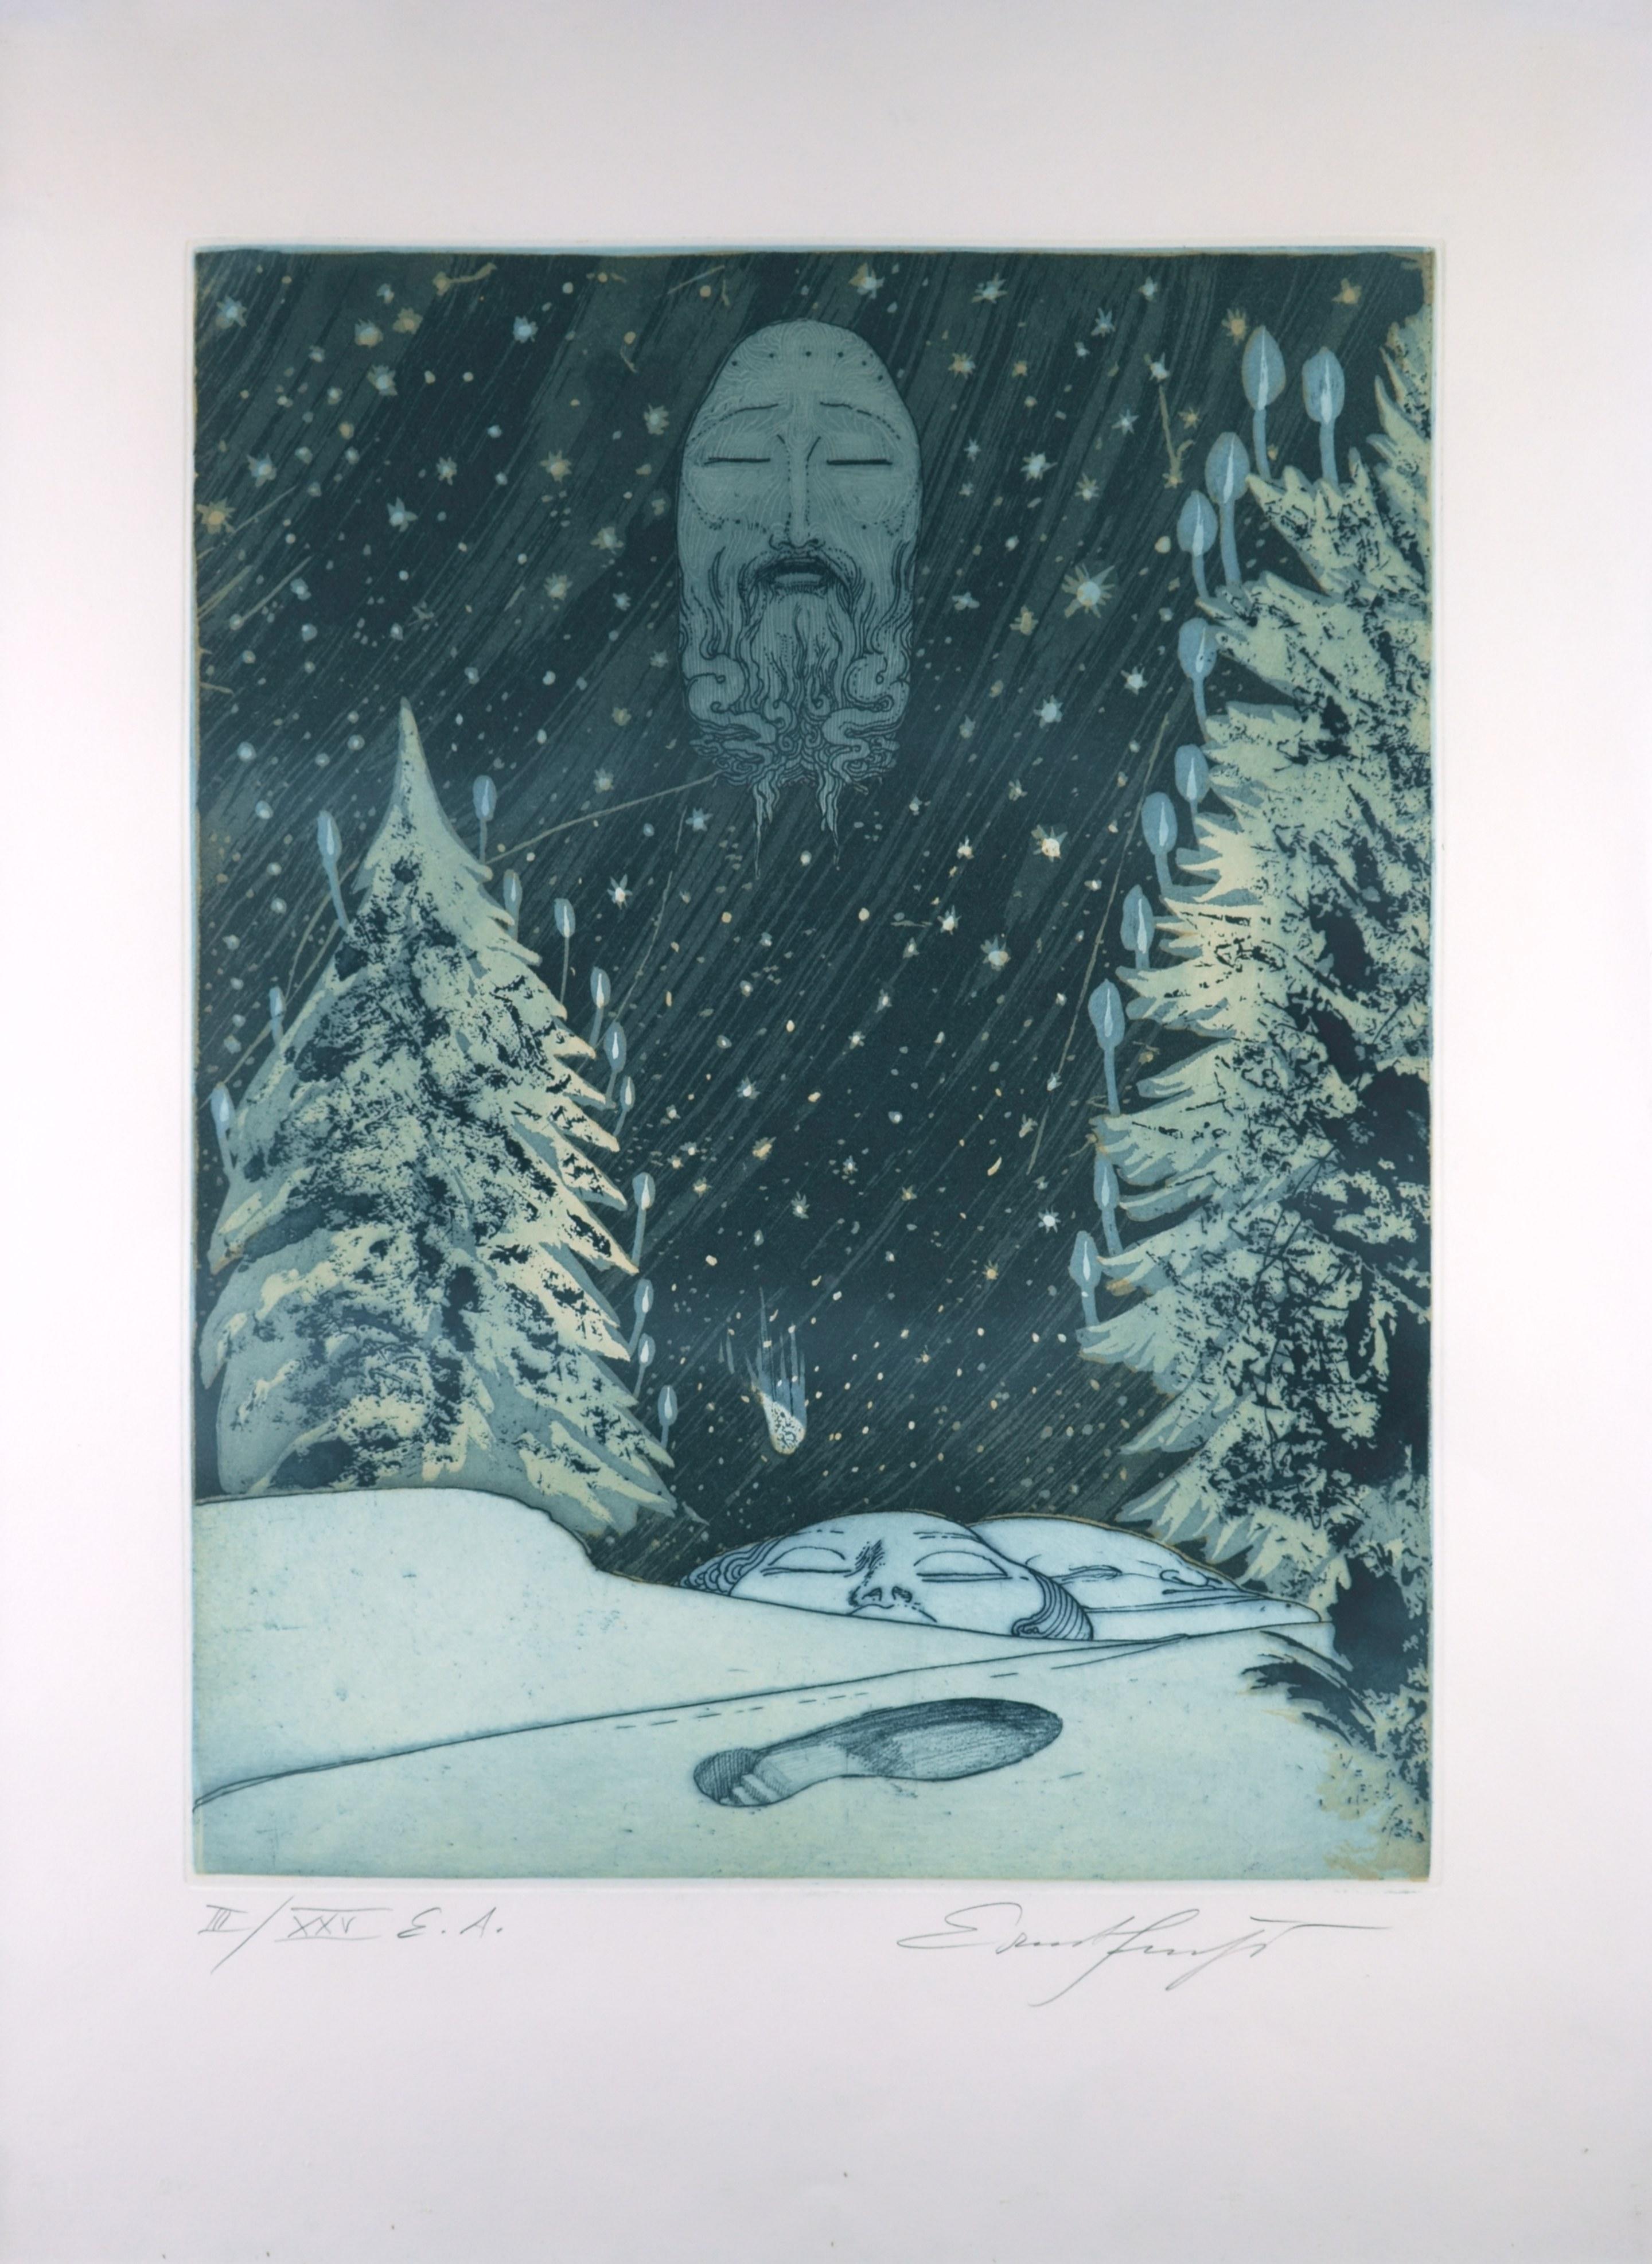 Ernst Fuchs (1930 Vienne - 2015 ibid), La trace perdue, 1972. Vernis mou et aquatinte, 46,8 x 36,4 cm (planche), 66 x 50 cm (feuille), 69,5 x 53,5 cm (cadre), WVZ Hartmann no. 185 Id, signé à la main au crayon en bas à droite Ernst Fuchs